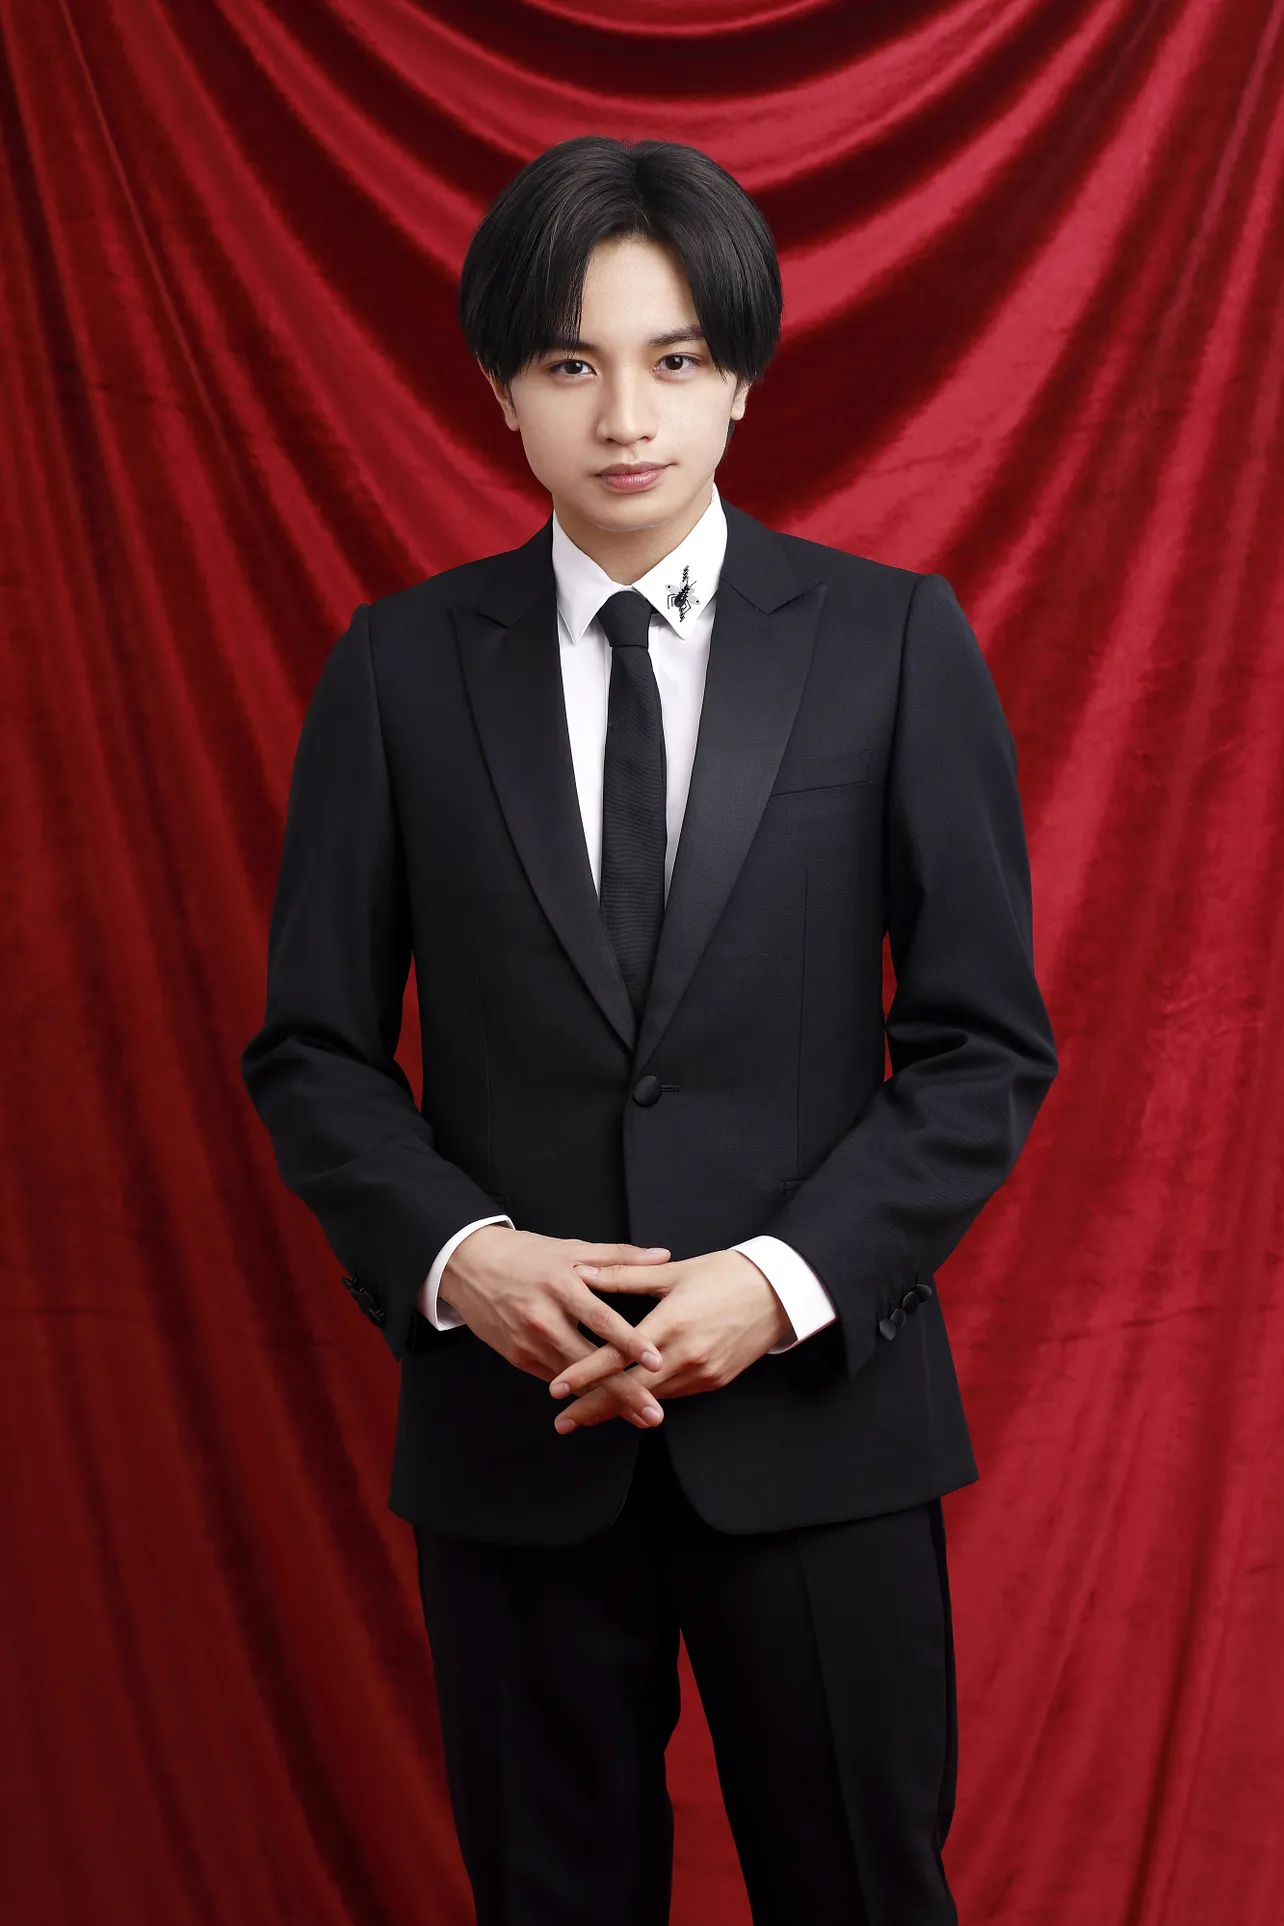 2月10日(月)放送の「第92回アカデミー賞授賞式」に、スペシャルゲストとして出演する中島健人